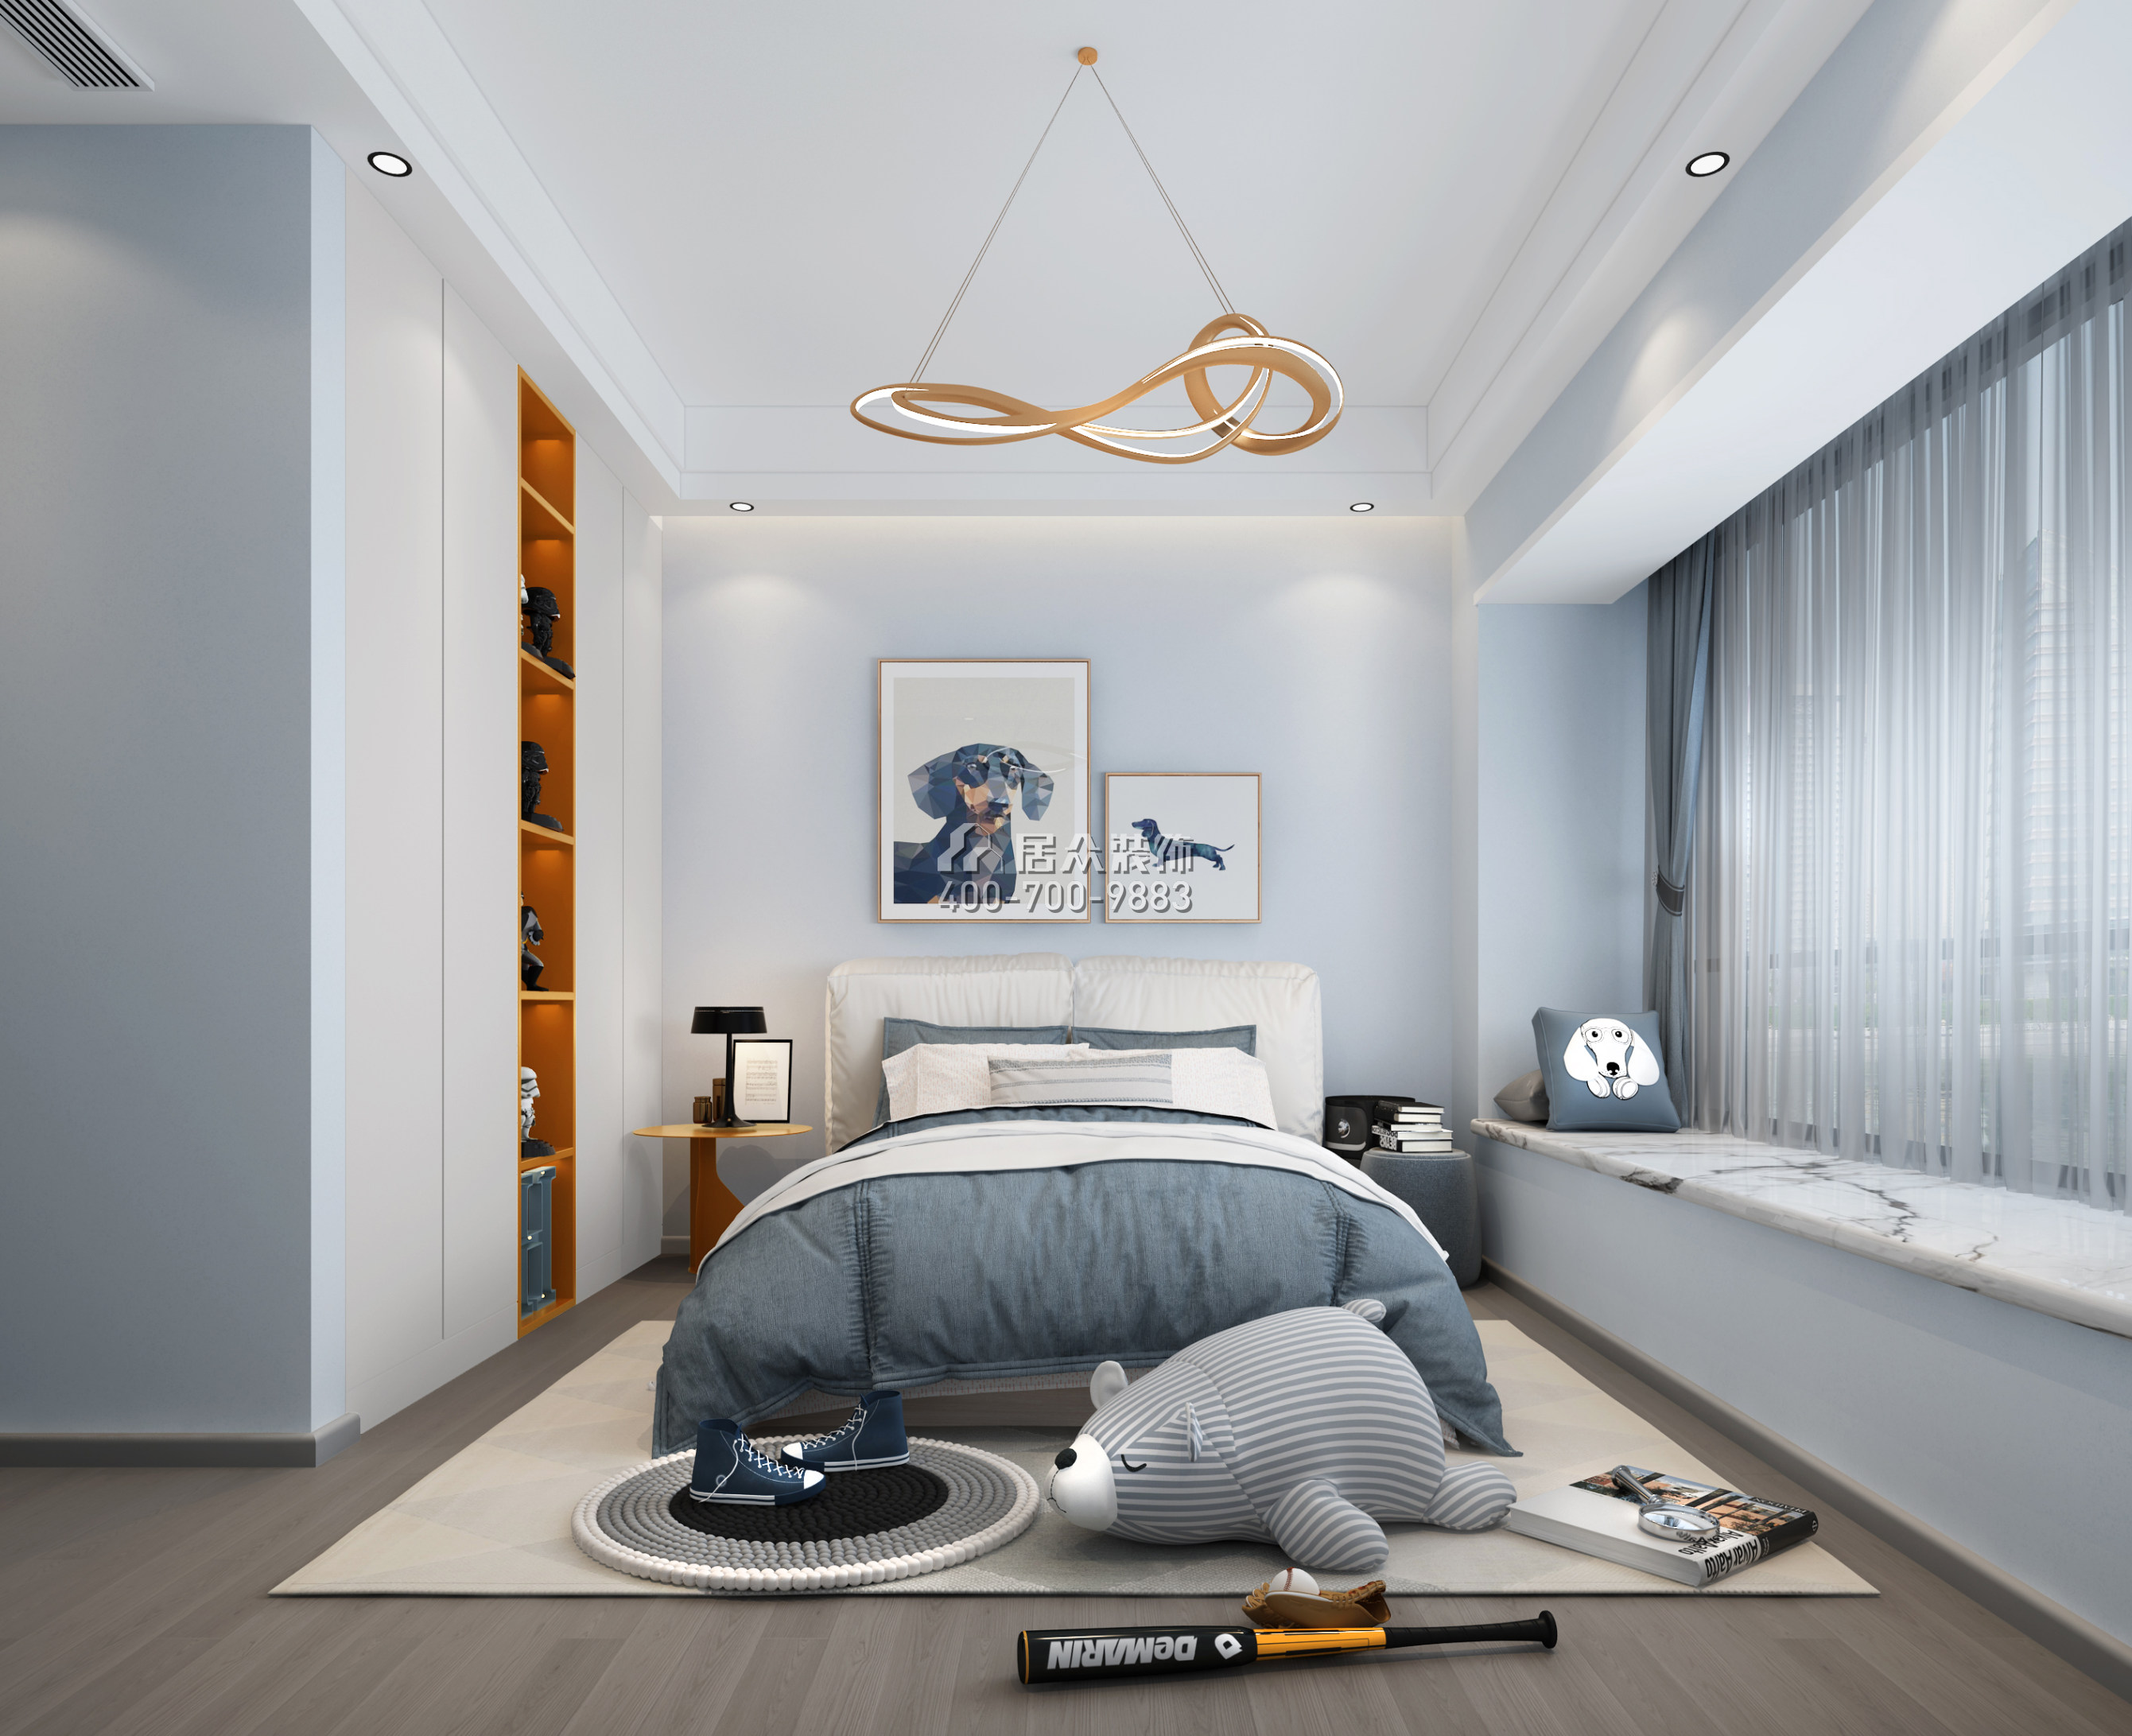 中信紅樹灣-三期300平方米現代簡約風格平層戶型臥室裝修效果圖